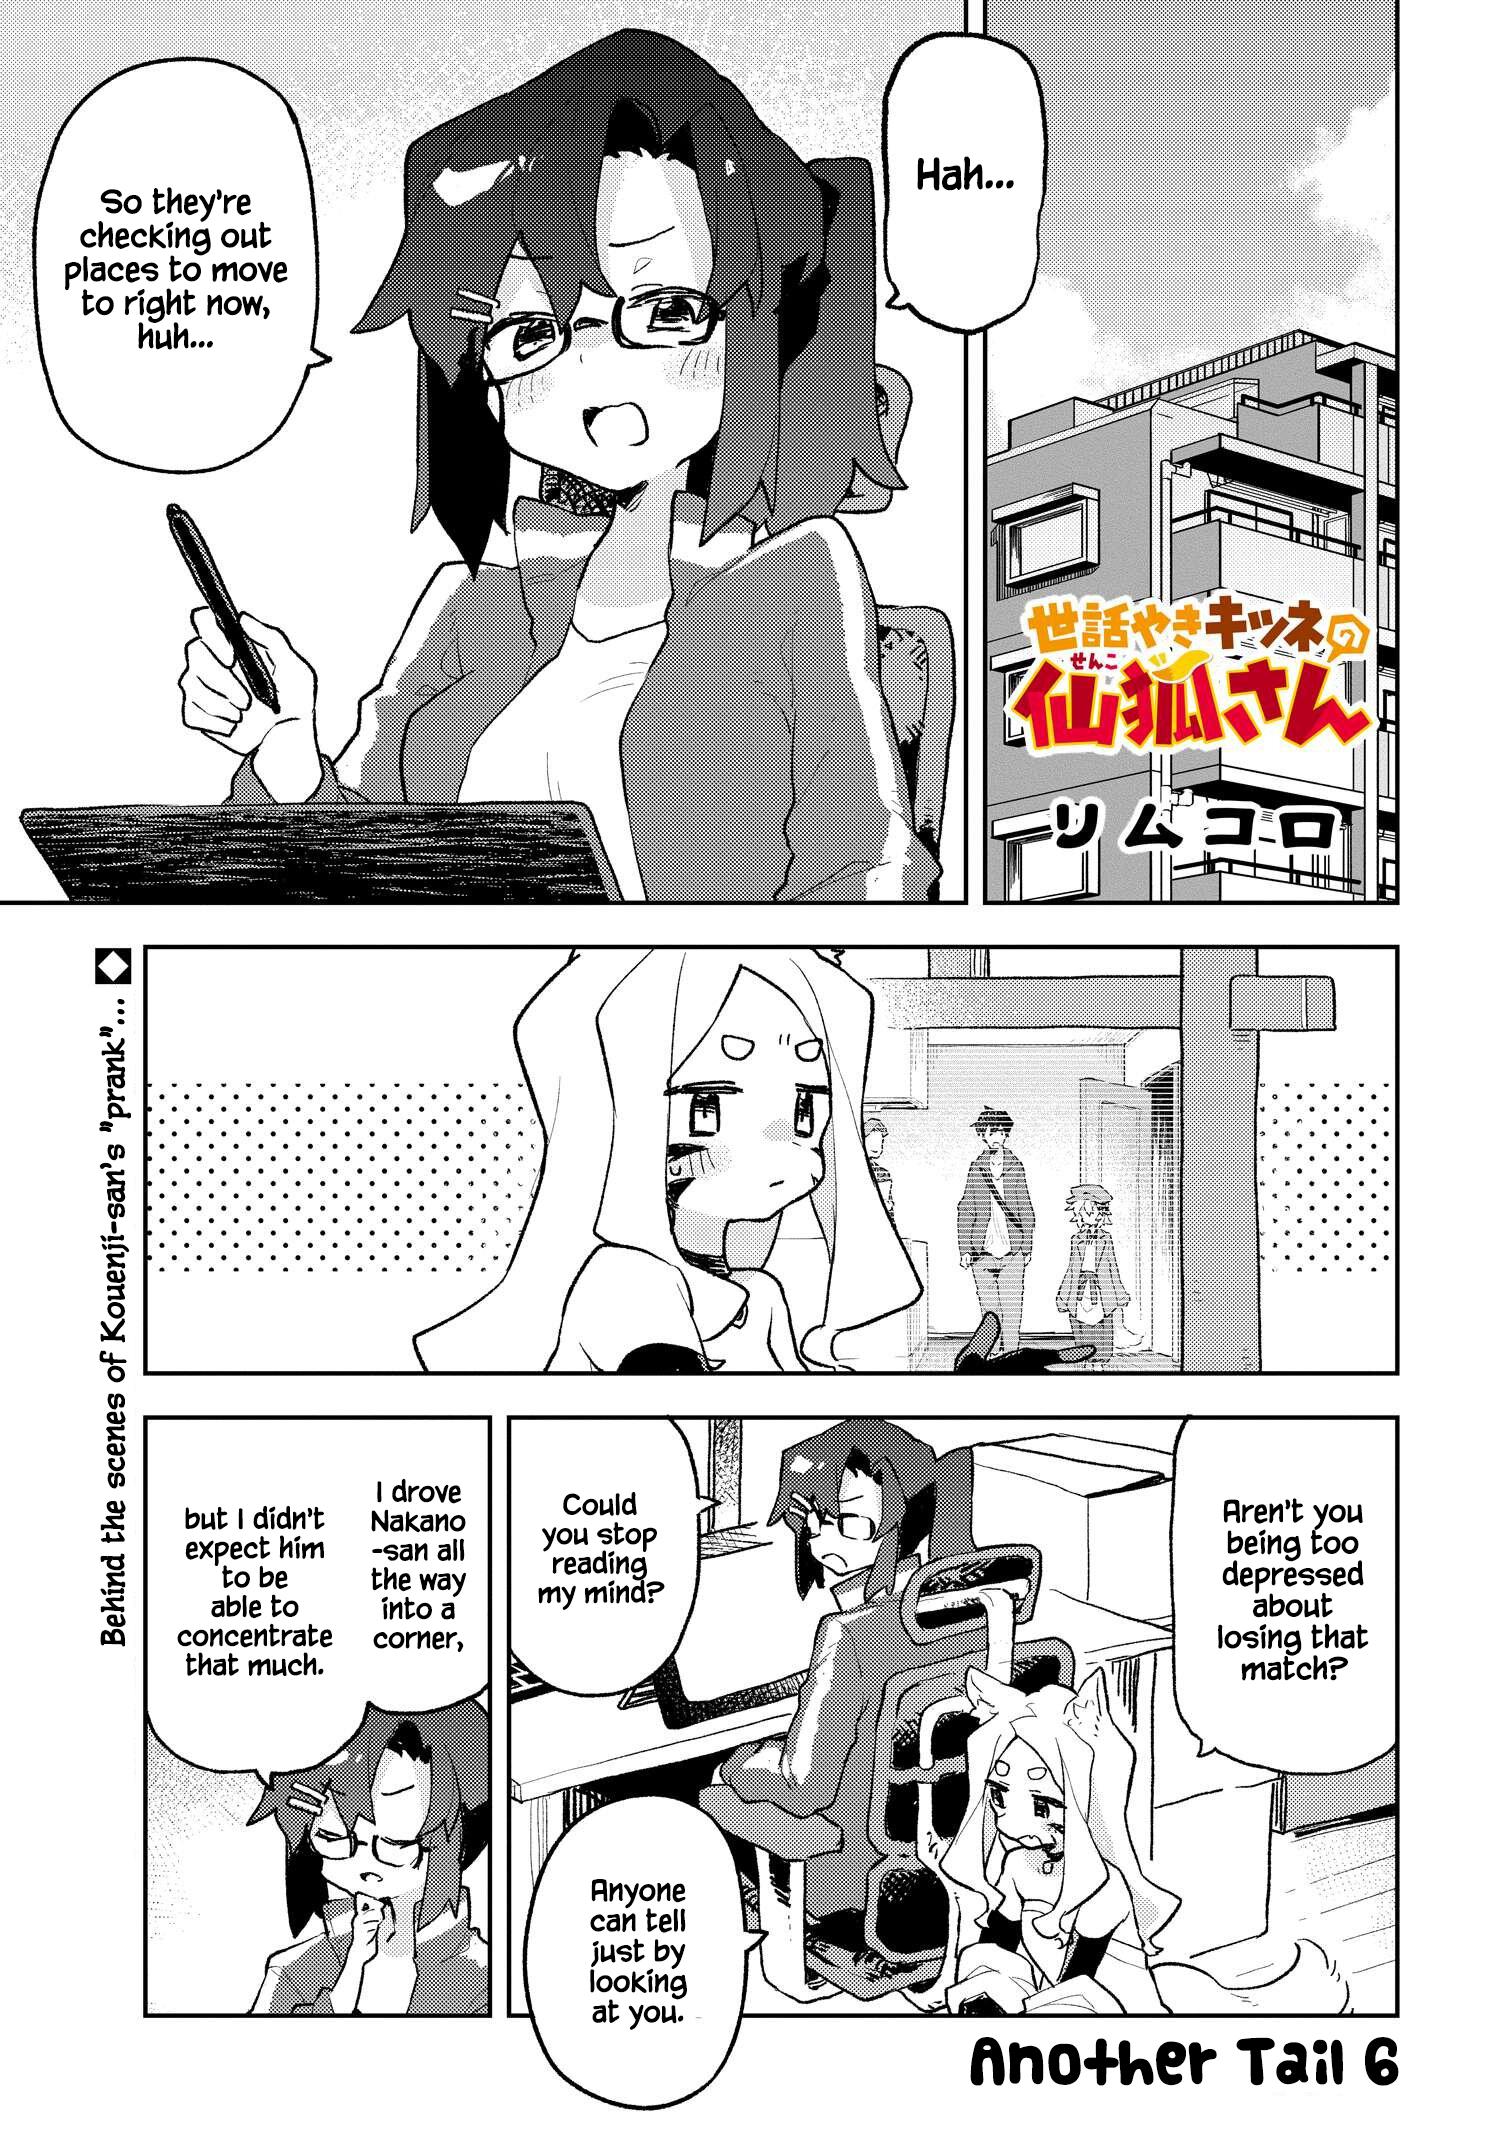 Sewayaki Kitsune No Senko-San Vol.9 Chapter 66.5: Another Tail 6 page 1 - Mangakakalot